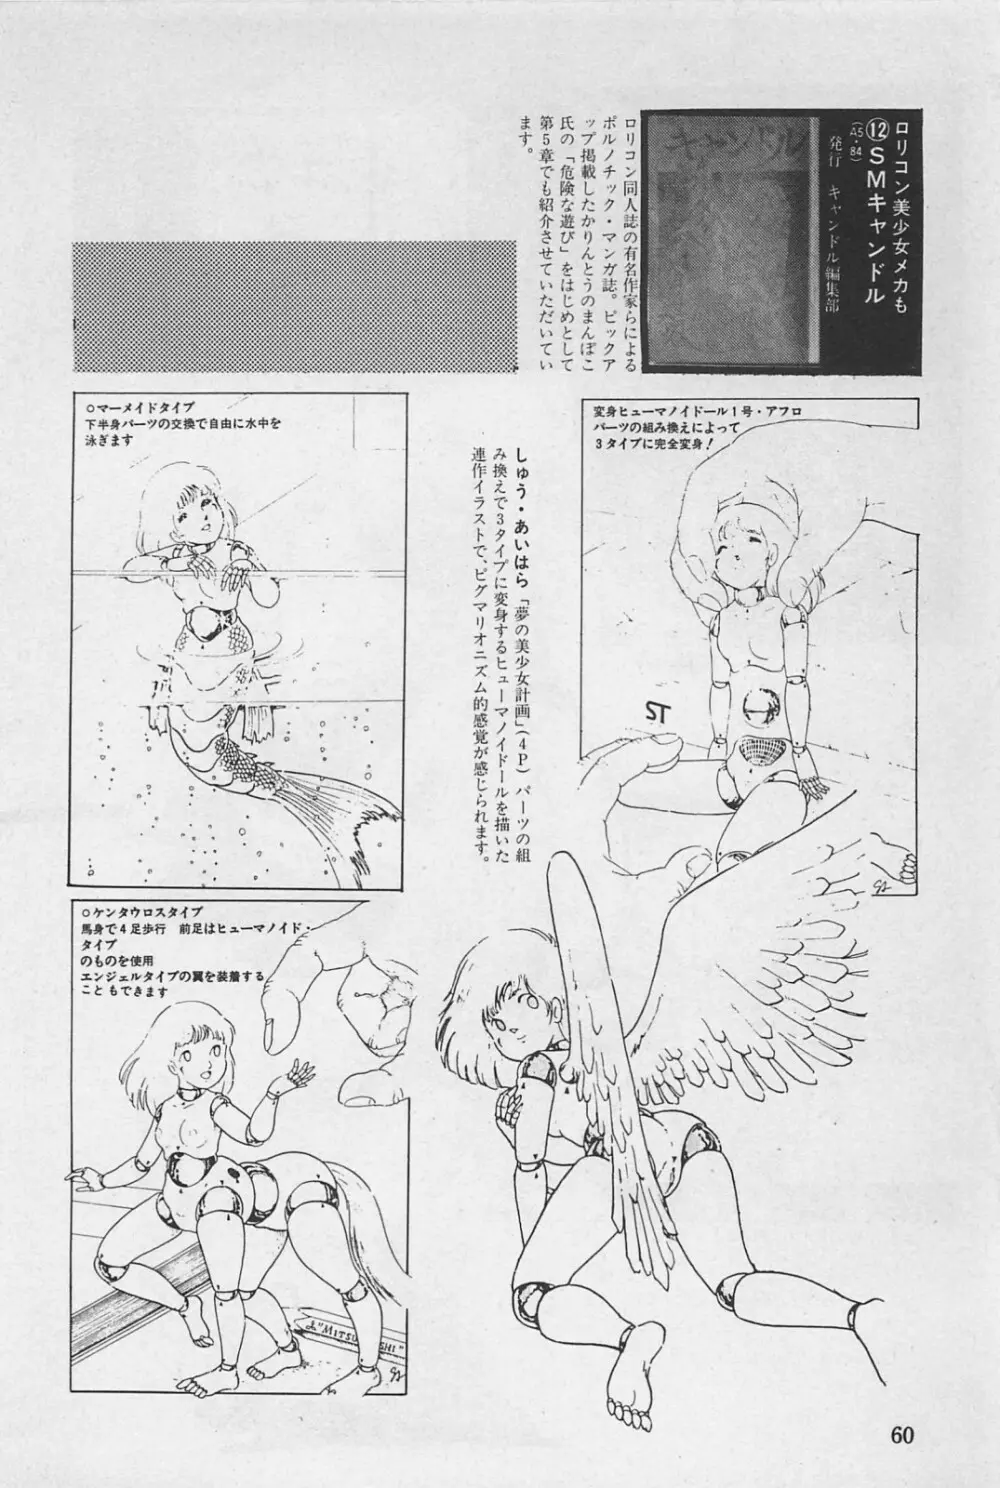 美少女症候群 1985 62ページ